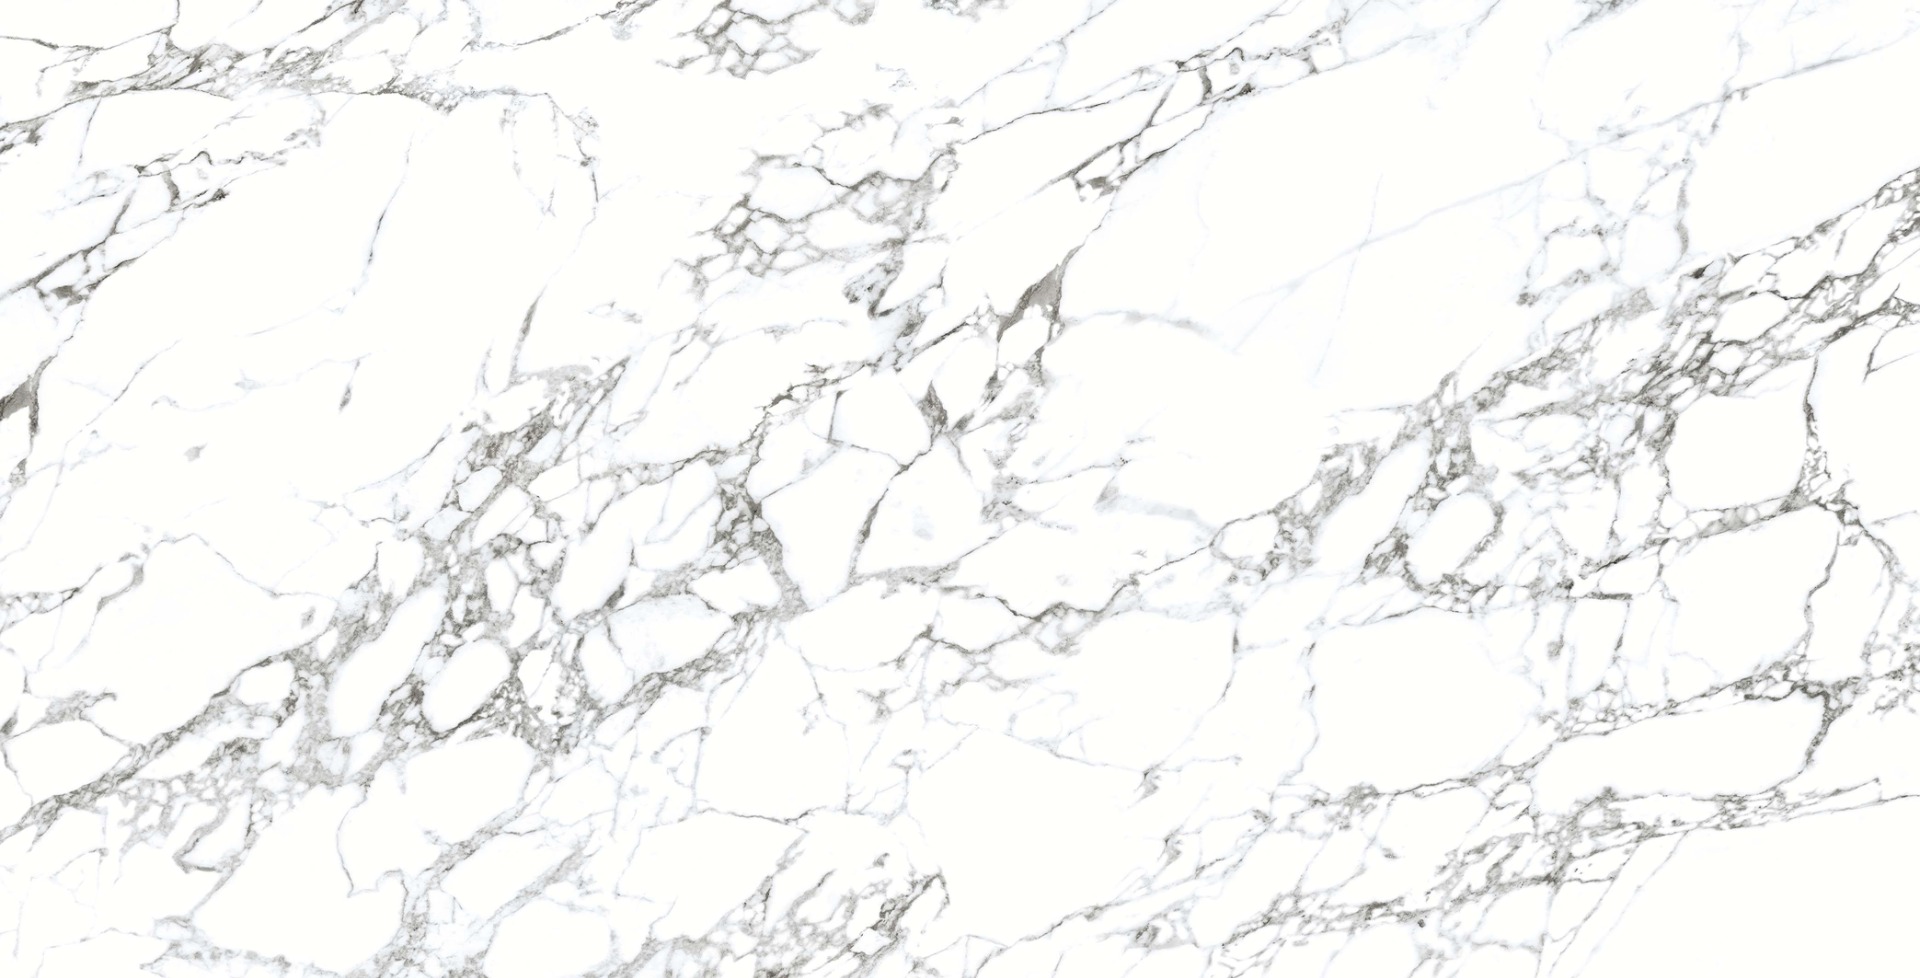 White Marble Tiles for Bathroom Tiles, Living Room Tiles, Bedroom Tiles, Accent Tiles, Hospital Tiles, High Traffic Tiles, Bar/Restaurant, Commercial/Office, School & Collages